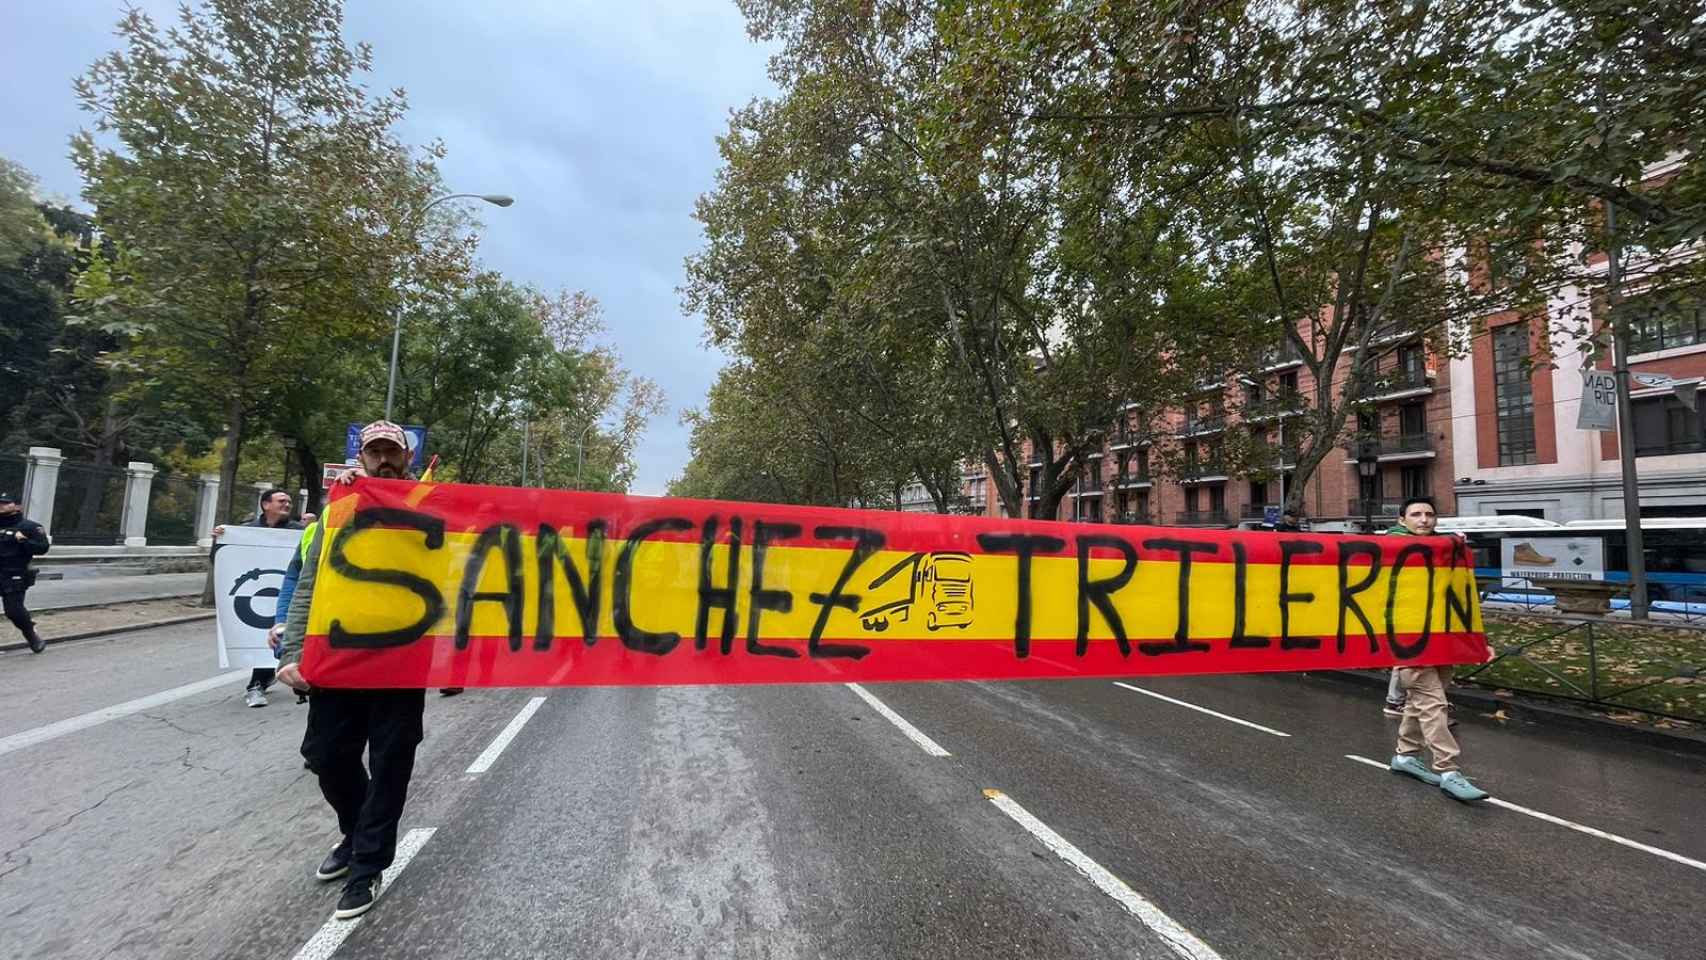 Un momento de la protesta en Madrid.